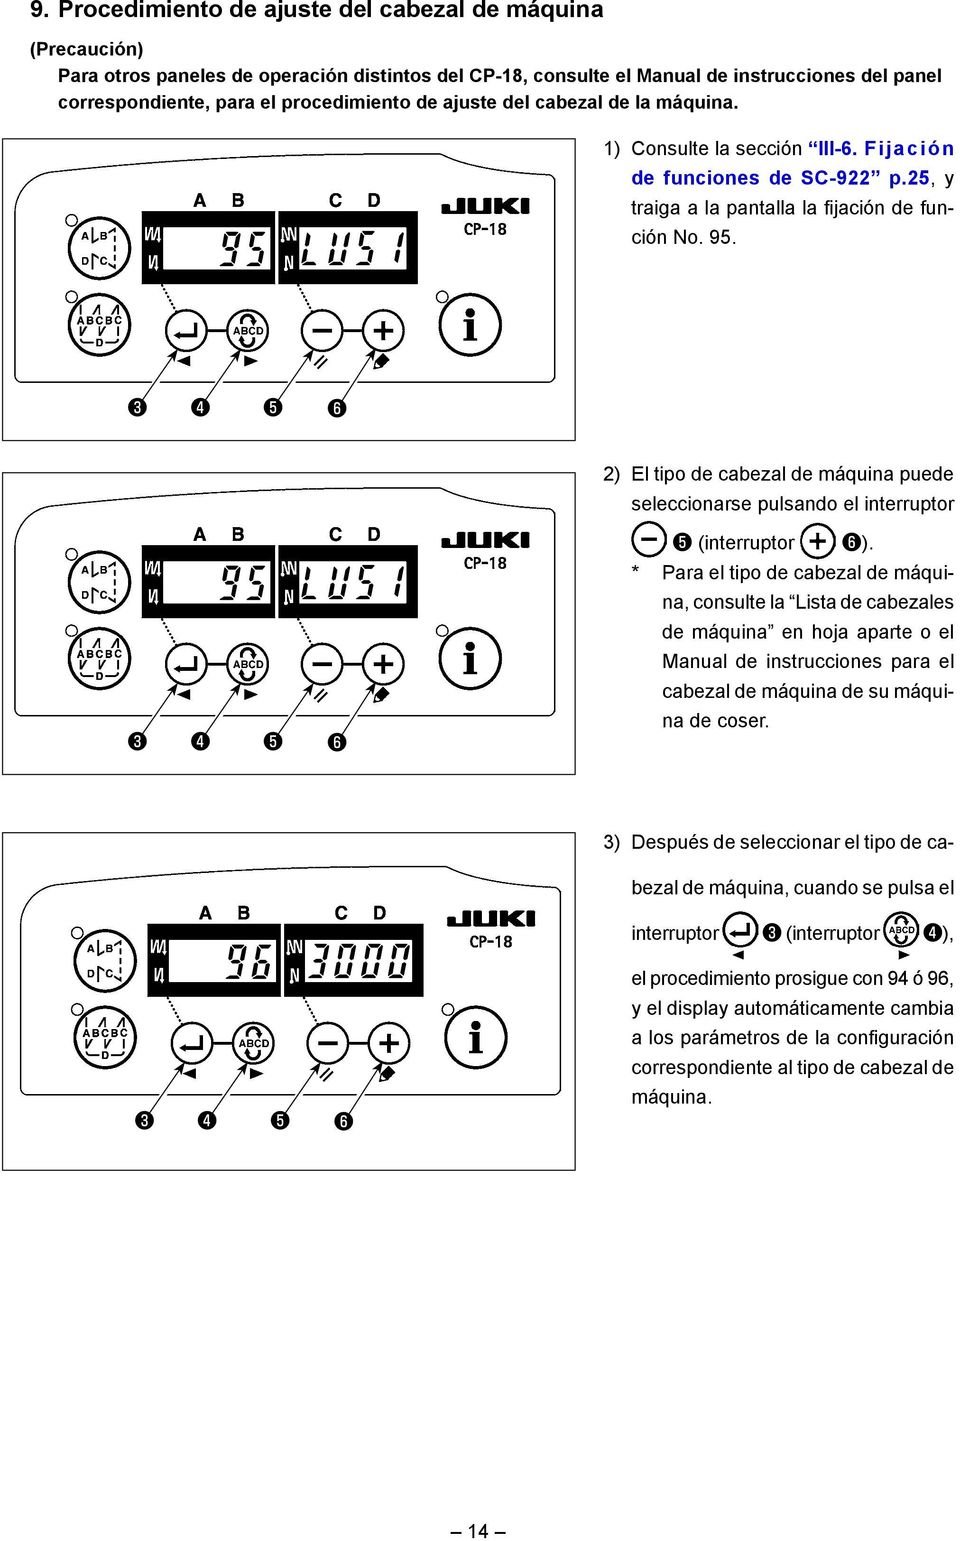 ❹ ❺ ❻ 2) El tipo de cabezal de máquina puede seleccionarse pulsando el interruptor ❺ (interruptor ❻).